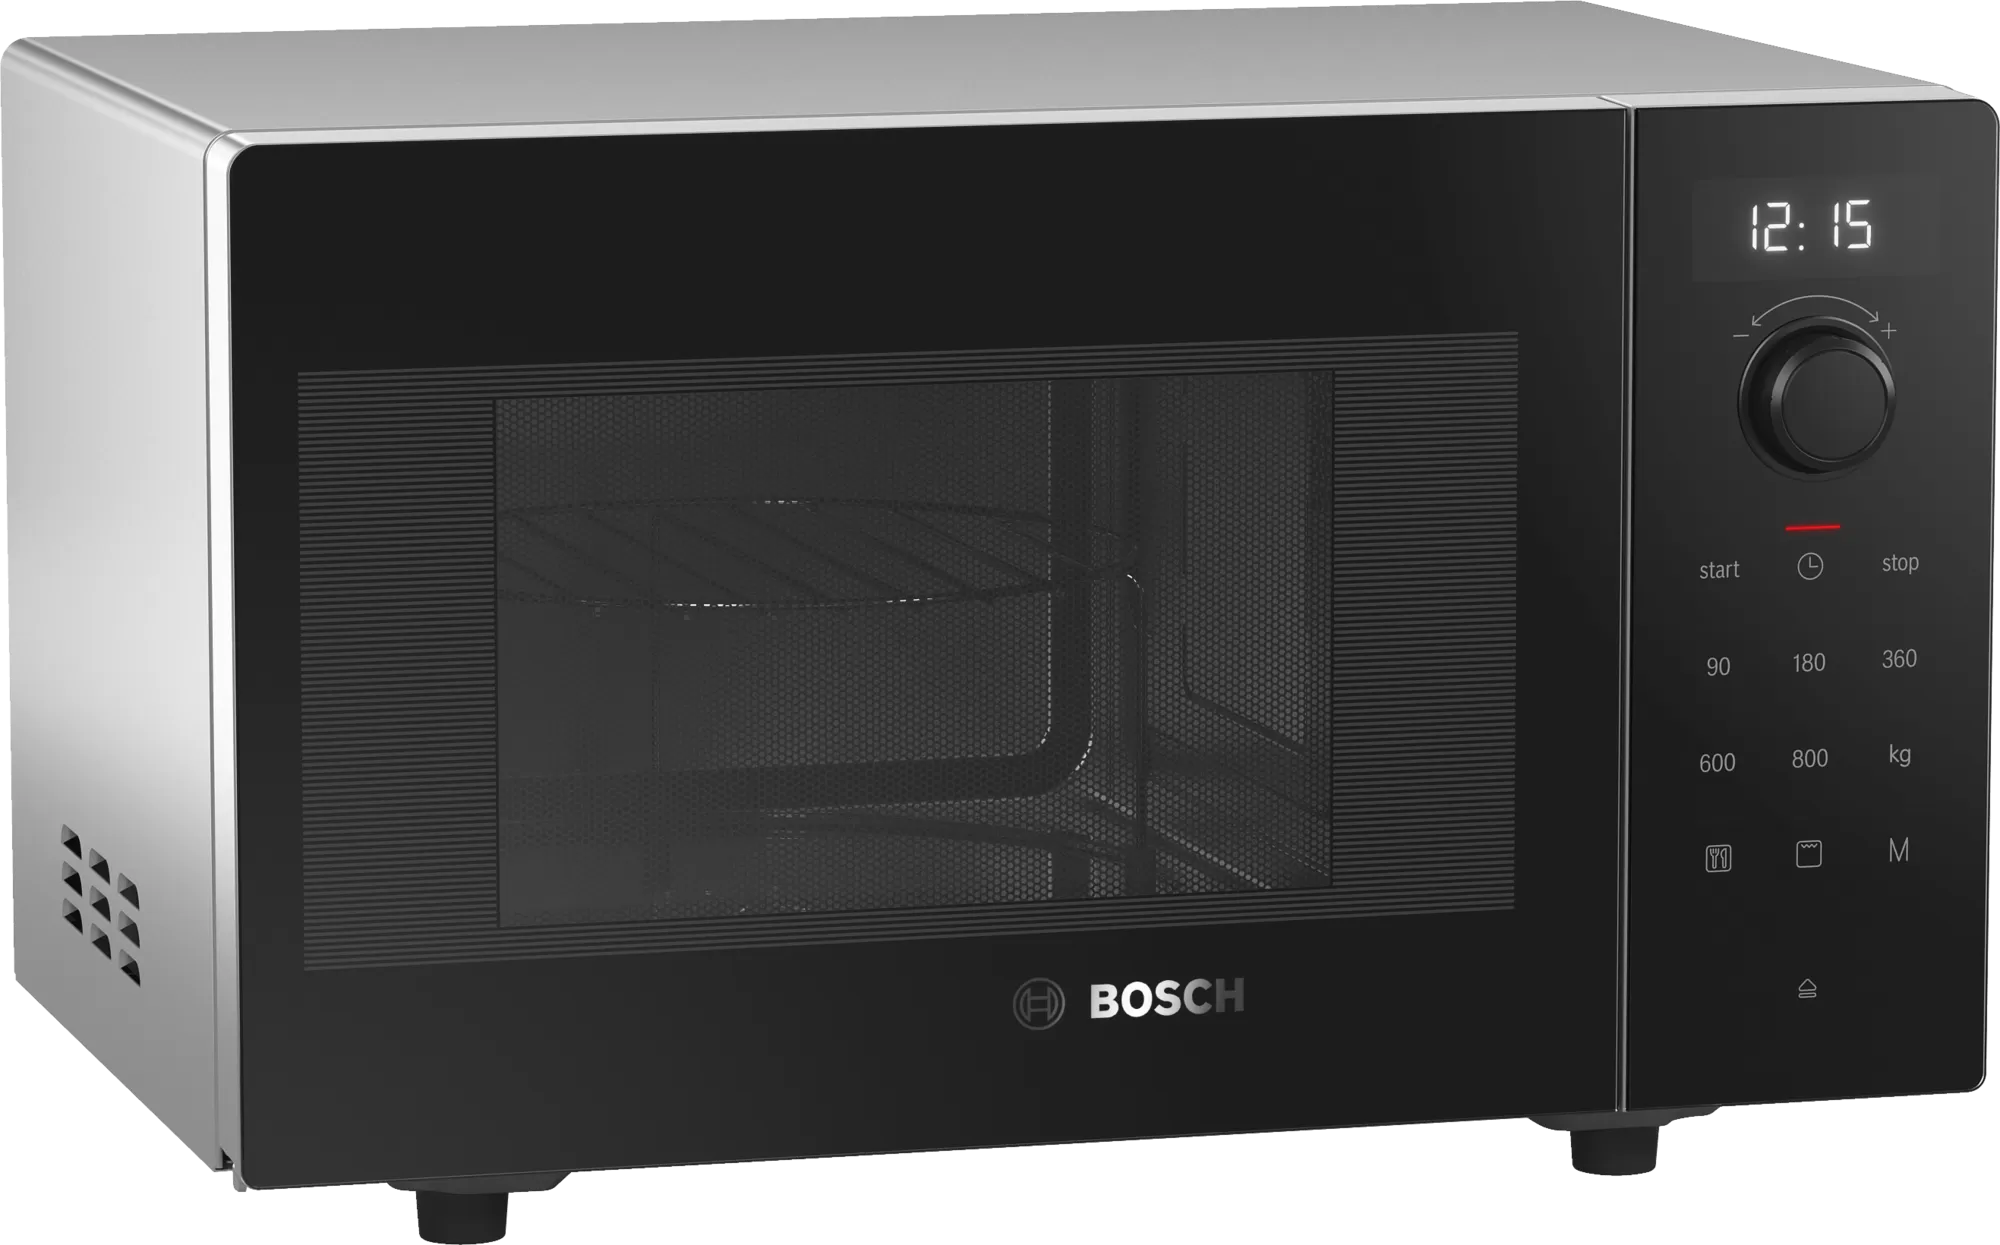 Свч отдельностоящая. Микроволновая печь Bosch ffm553mb0. СВЧ печь Bosch fem513mb0. Микроволновая печь бош 513. Микроволновая печь Bosch отдельностоящая.